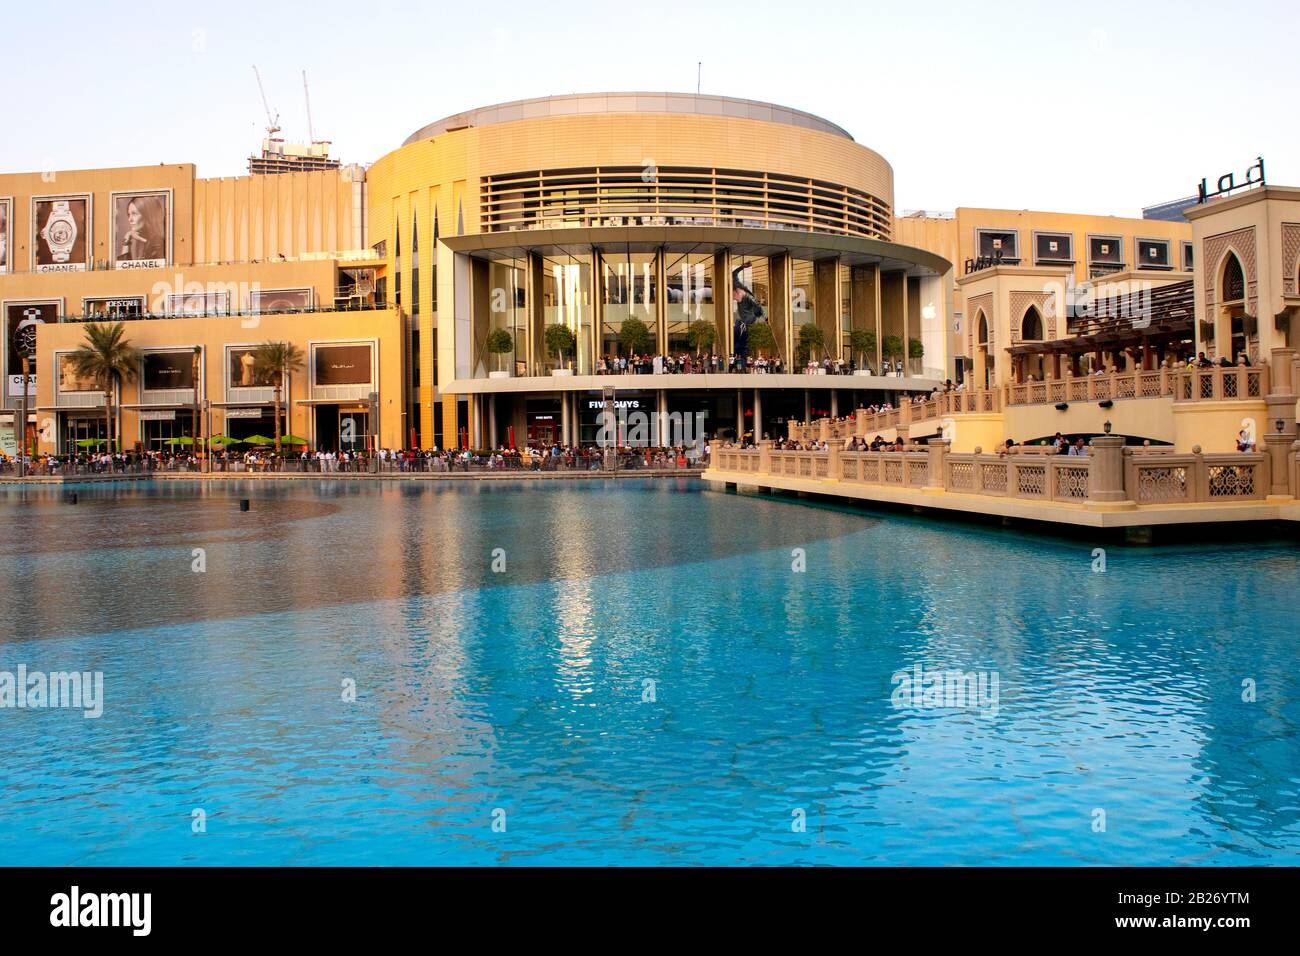 Dubaï / Émirats arabes Unis - 5 novembre 2019 : le plus grand centre commercial au monde. Extérieur du centre commercial de Dubaï avec touristes. Architecture moderne du centre commercial de Dubaï surpeuplée. Banque D'Images